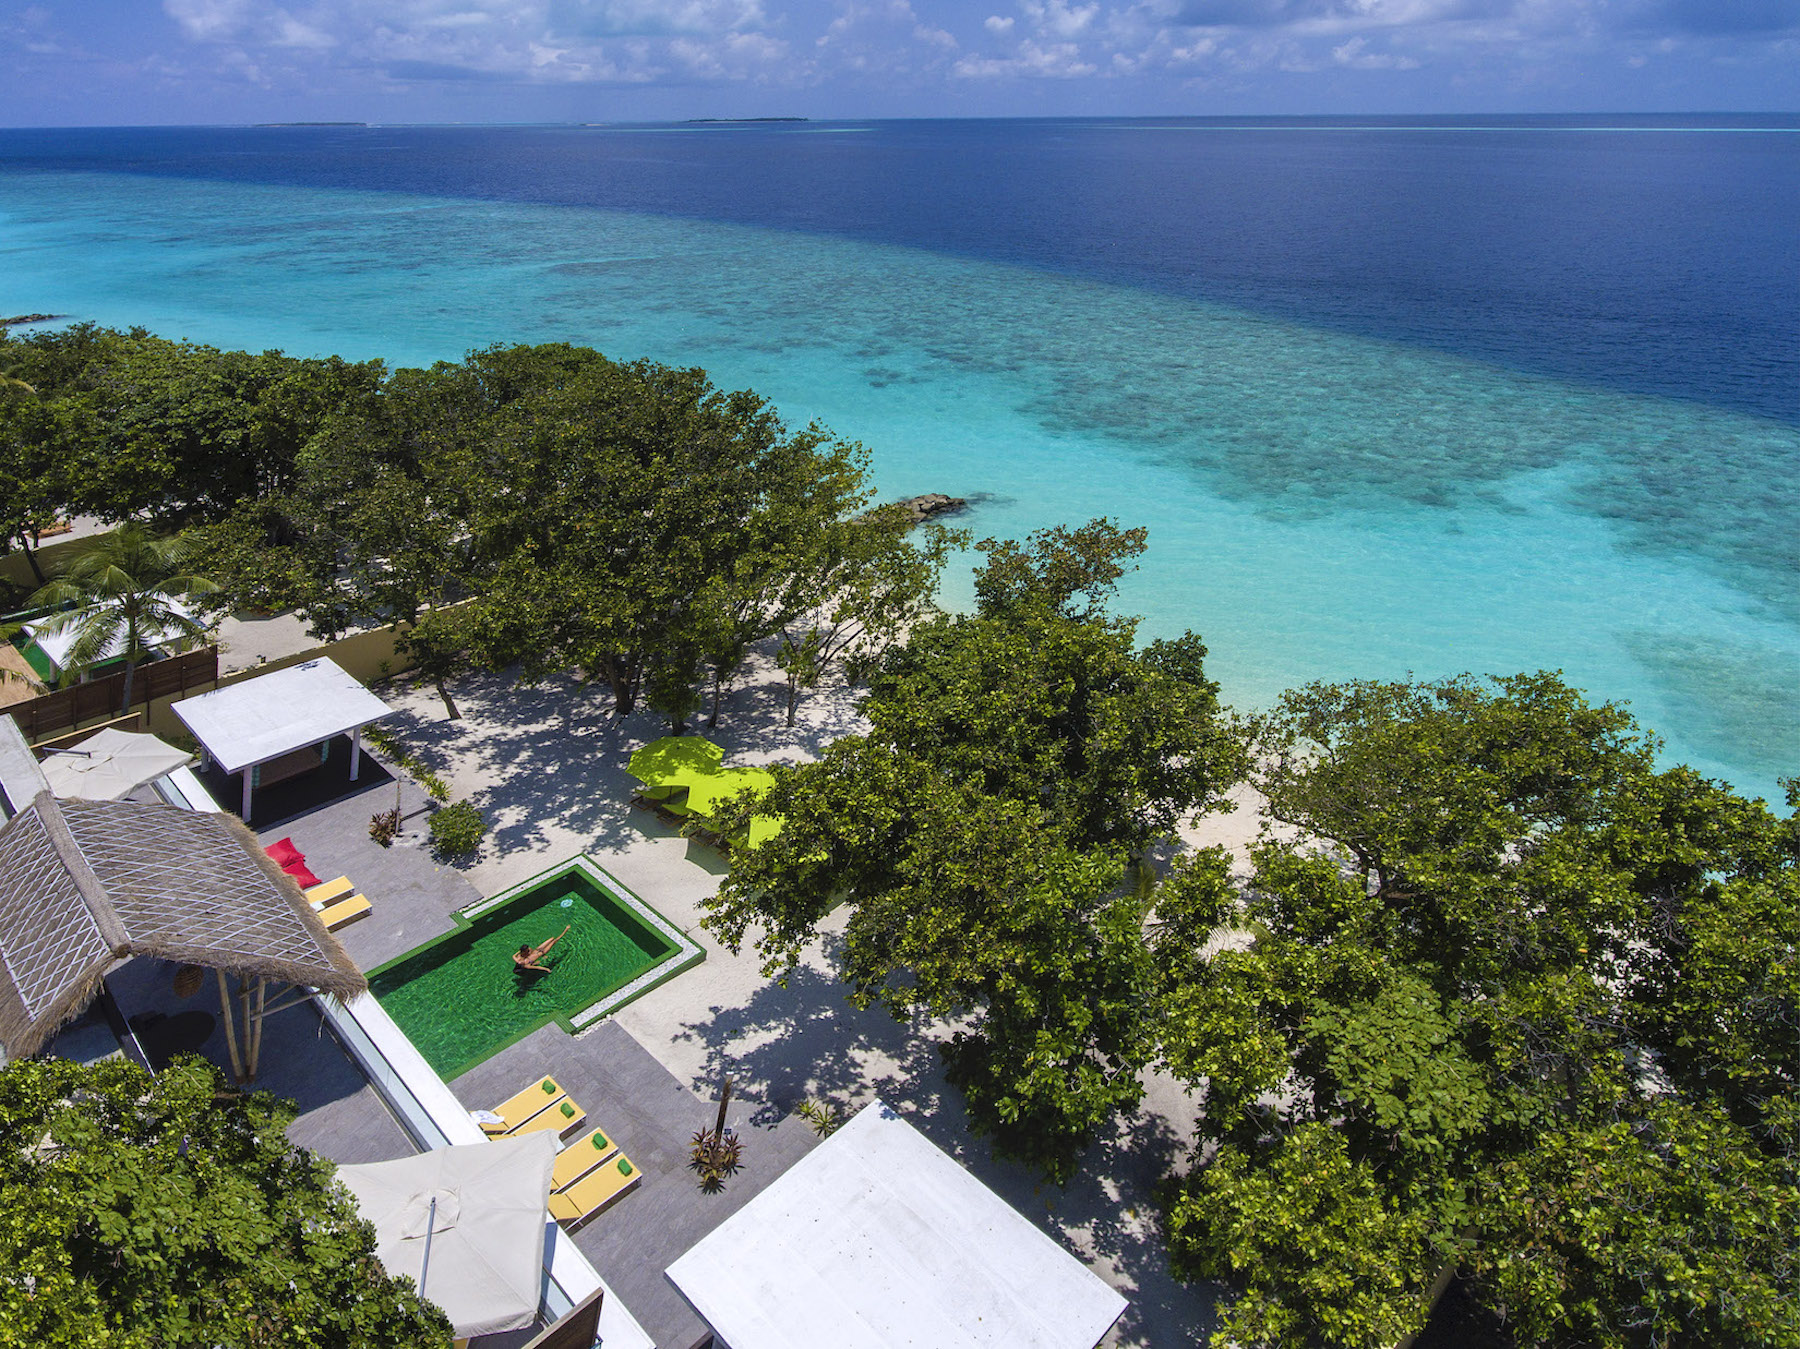 ابحث عن الزمرد في جزر المالديف